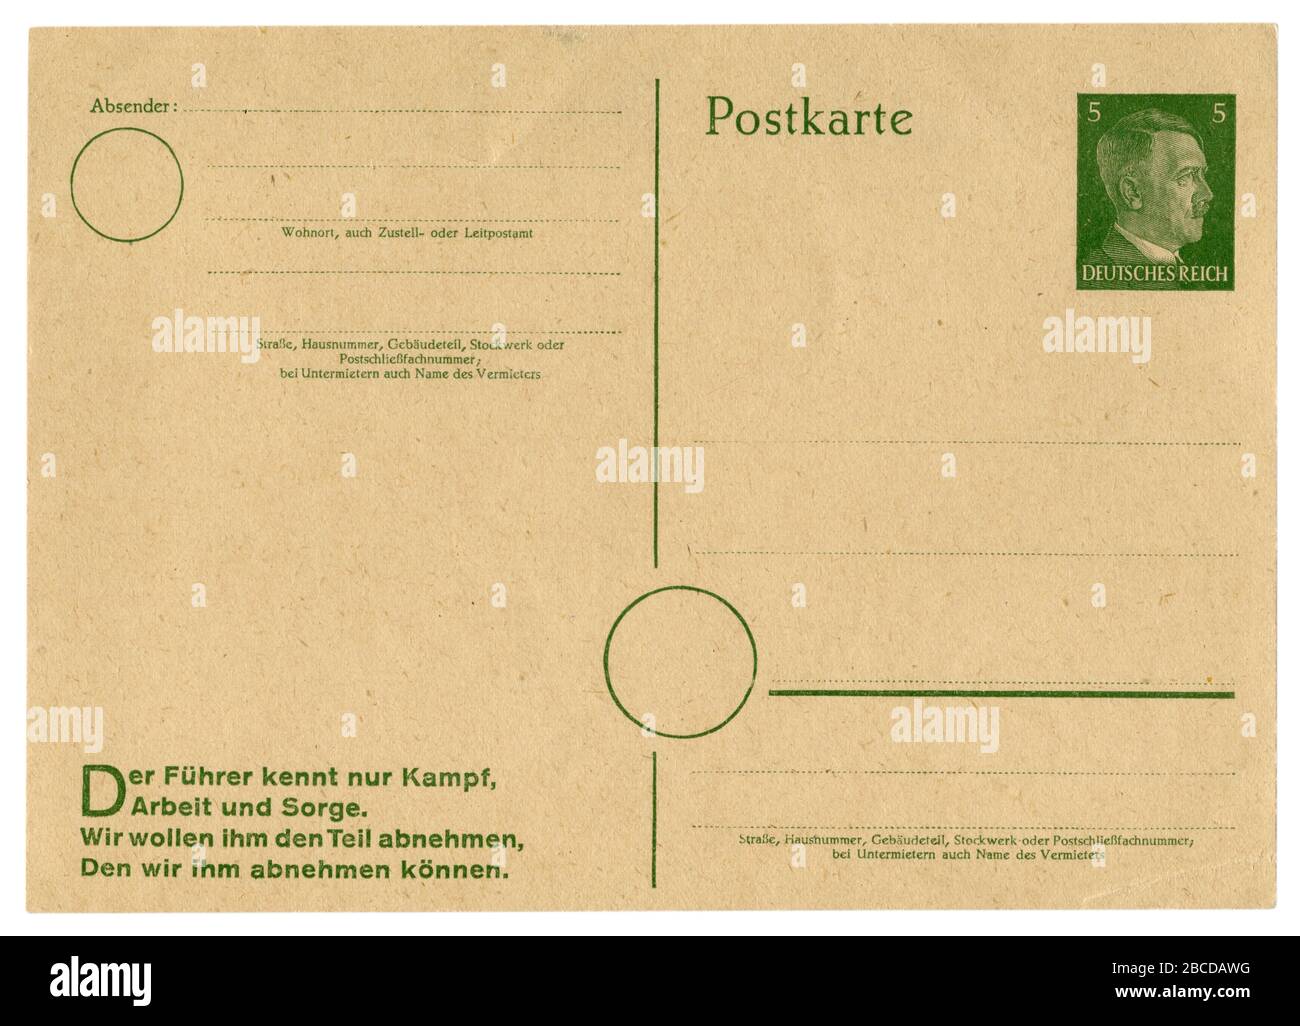 Carta postale storica tedesca: Inutilizzata, con slogan di propaganda, Adolf Hitler incisioni di profilo timbro stampato, 5 pfennigs, Germania, terzo Reich Foto Stock